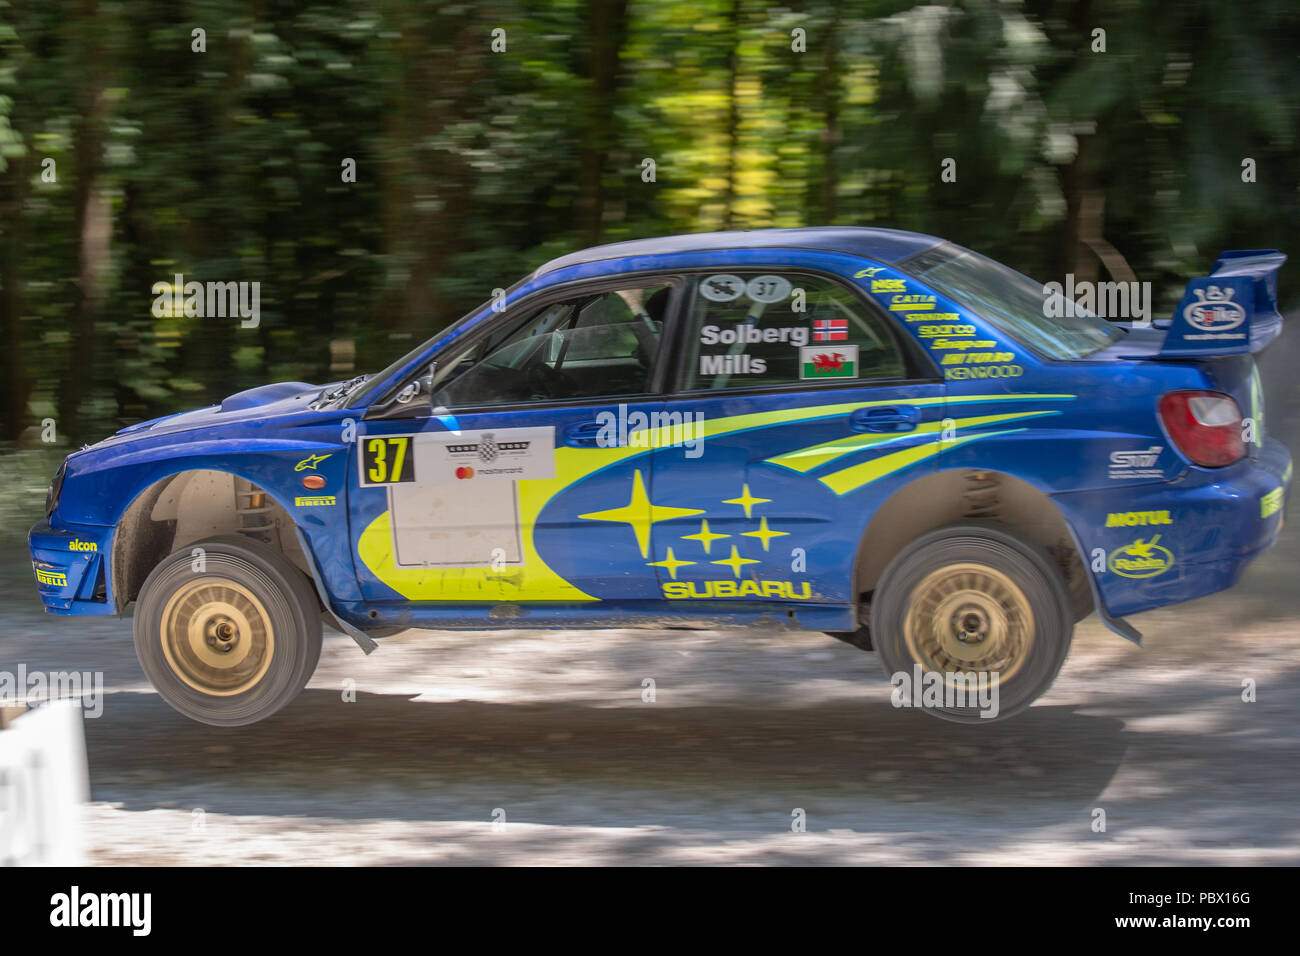 Un aria bourne Subaru Impreza rally car nella foresta fasi di Goodwood Festival of Speed 2018 Foto Stock